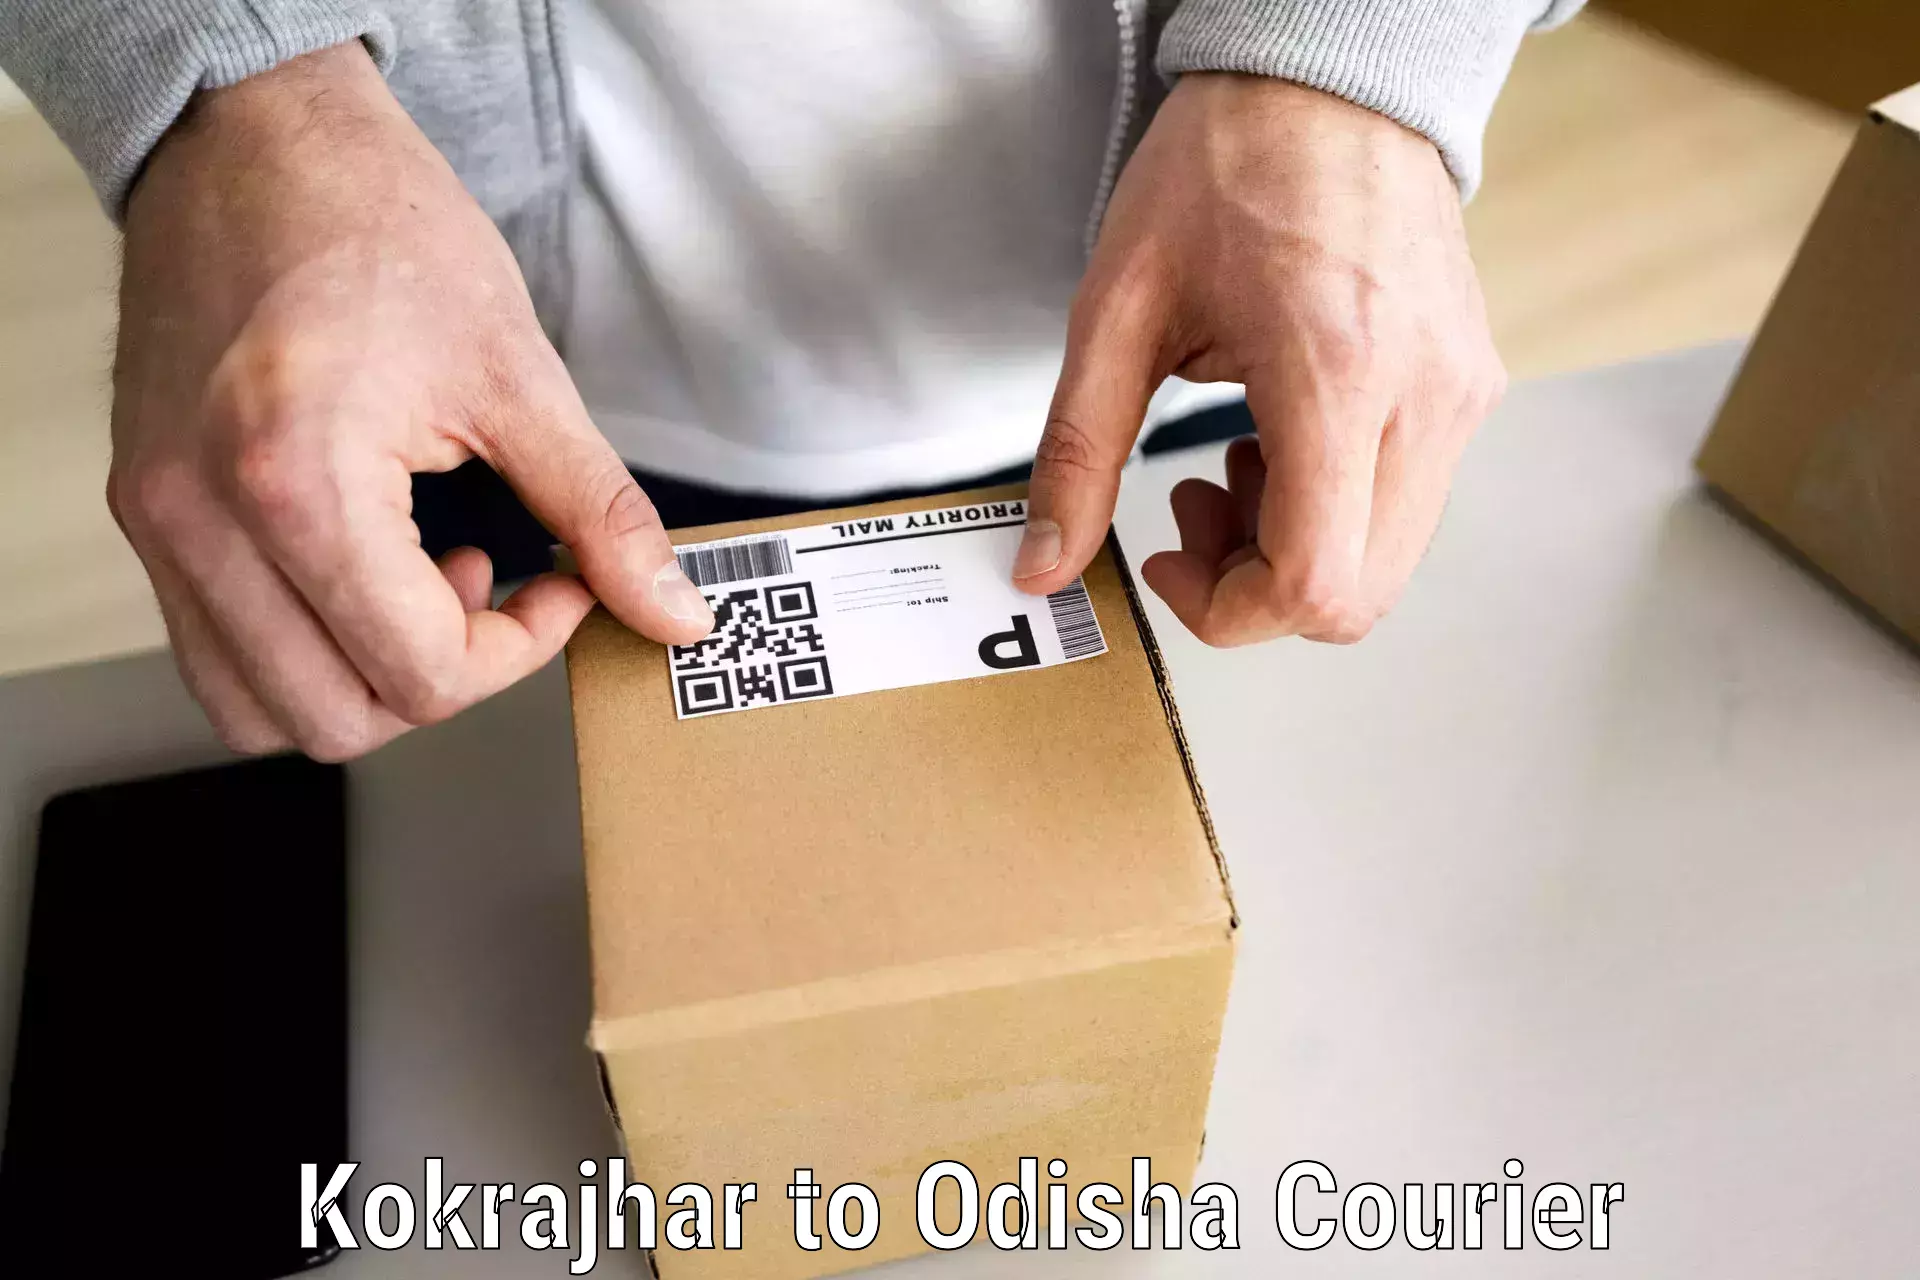 Efficient moving company Kokrajhar to Mohana